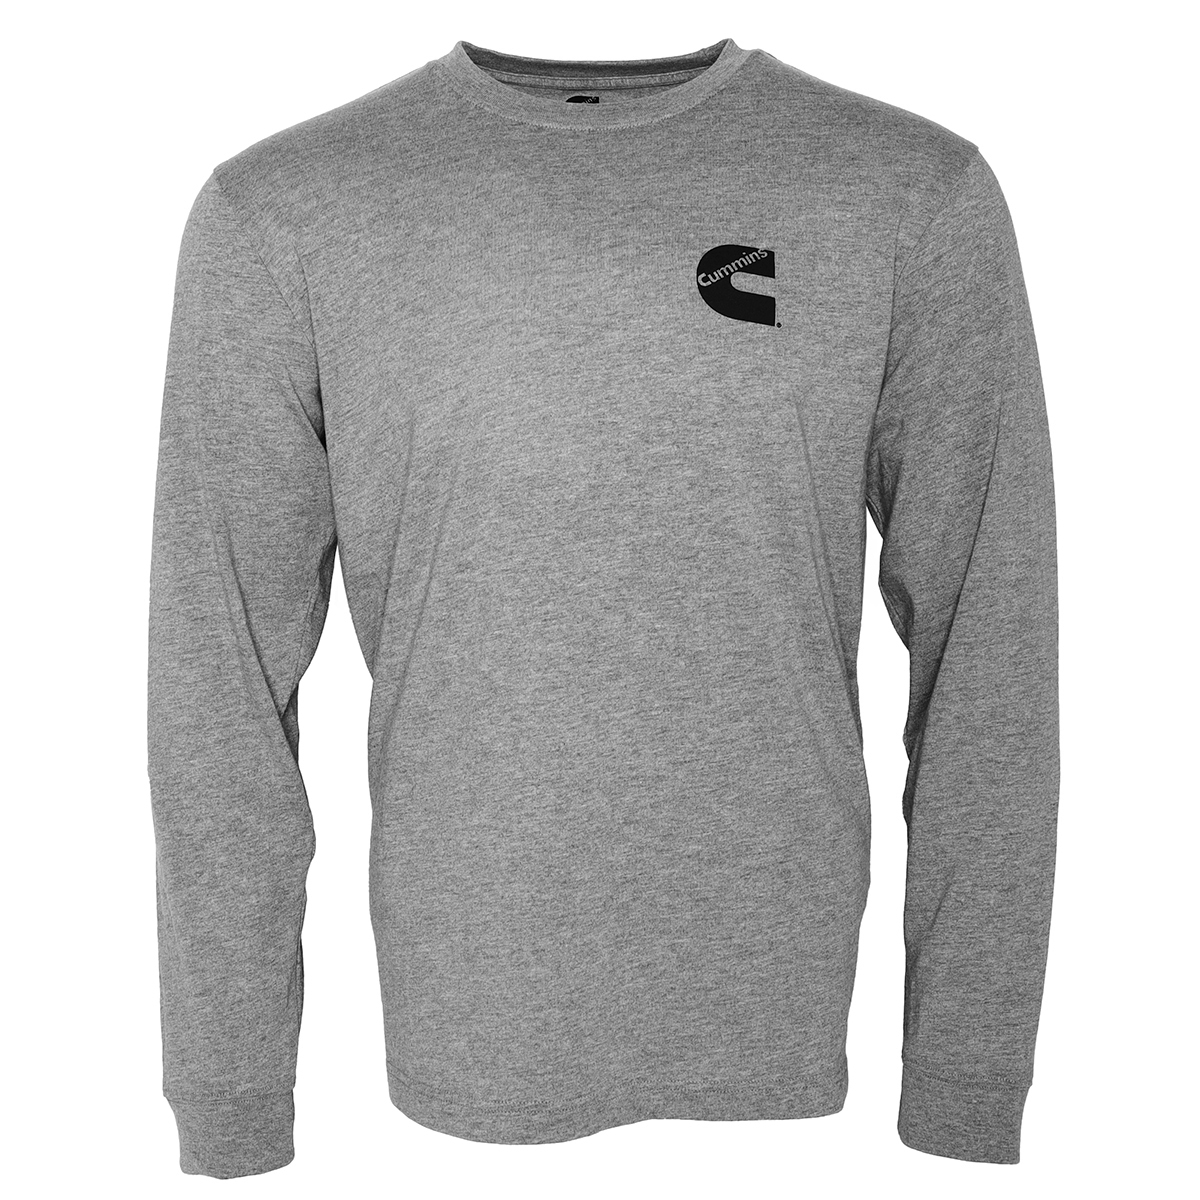 Cummins Unisex Long Sleeve T-shirt Cotton Blend Tee in Sport Gray CMN4782 - Small